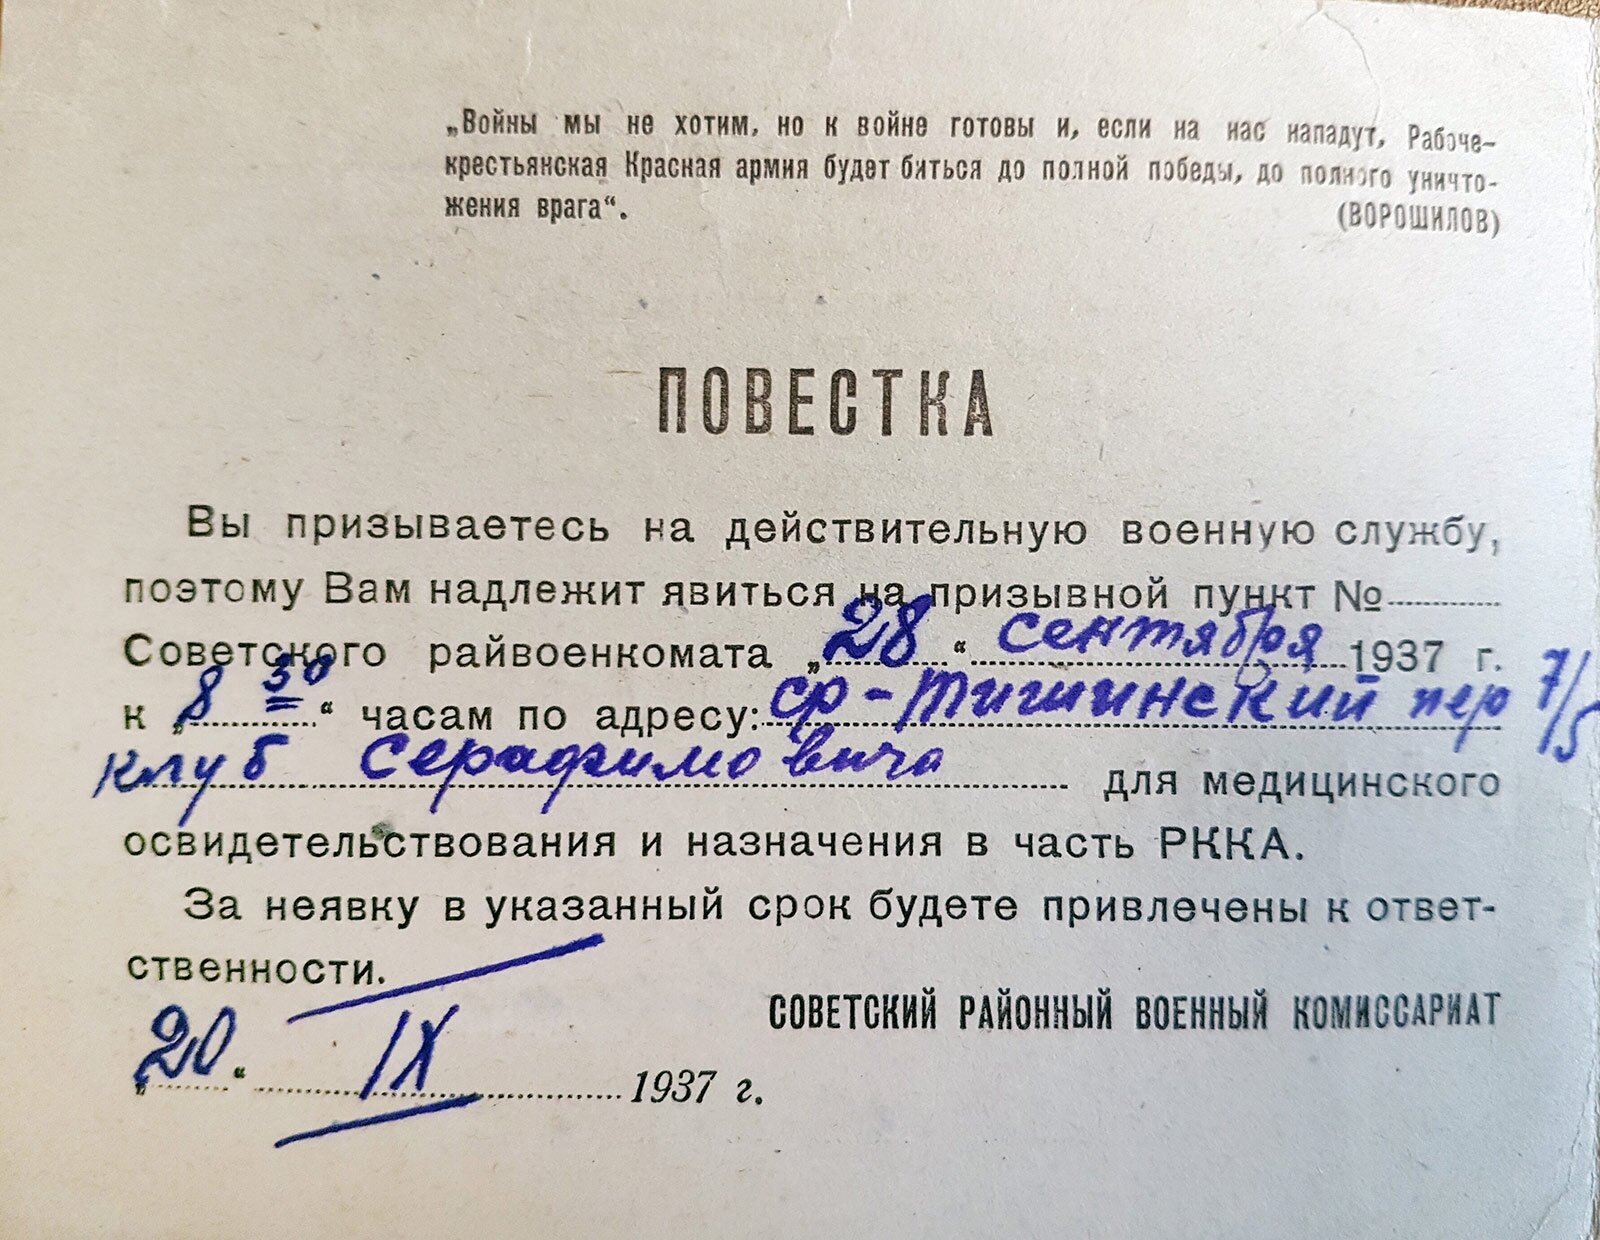 Повестка о призыве Евгения Долматовского на действительную военную службу. 20 сентября 1937 года. Главархив Москвы